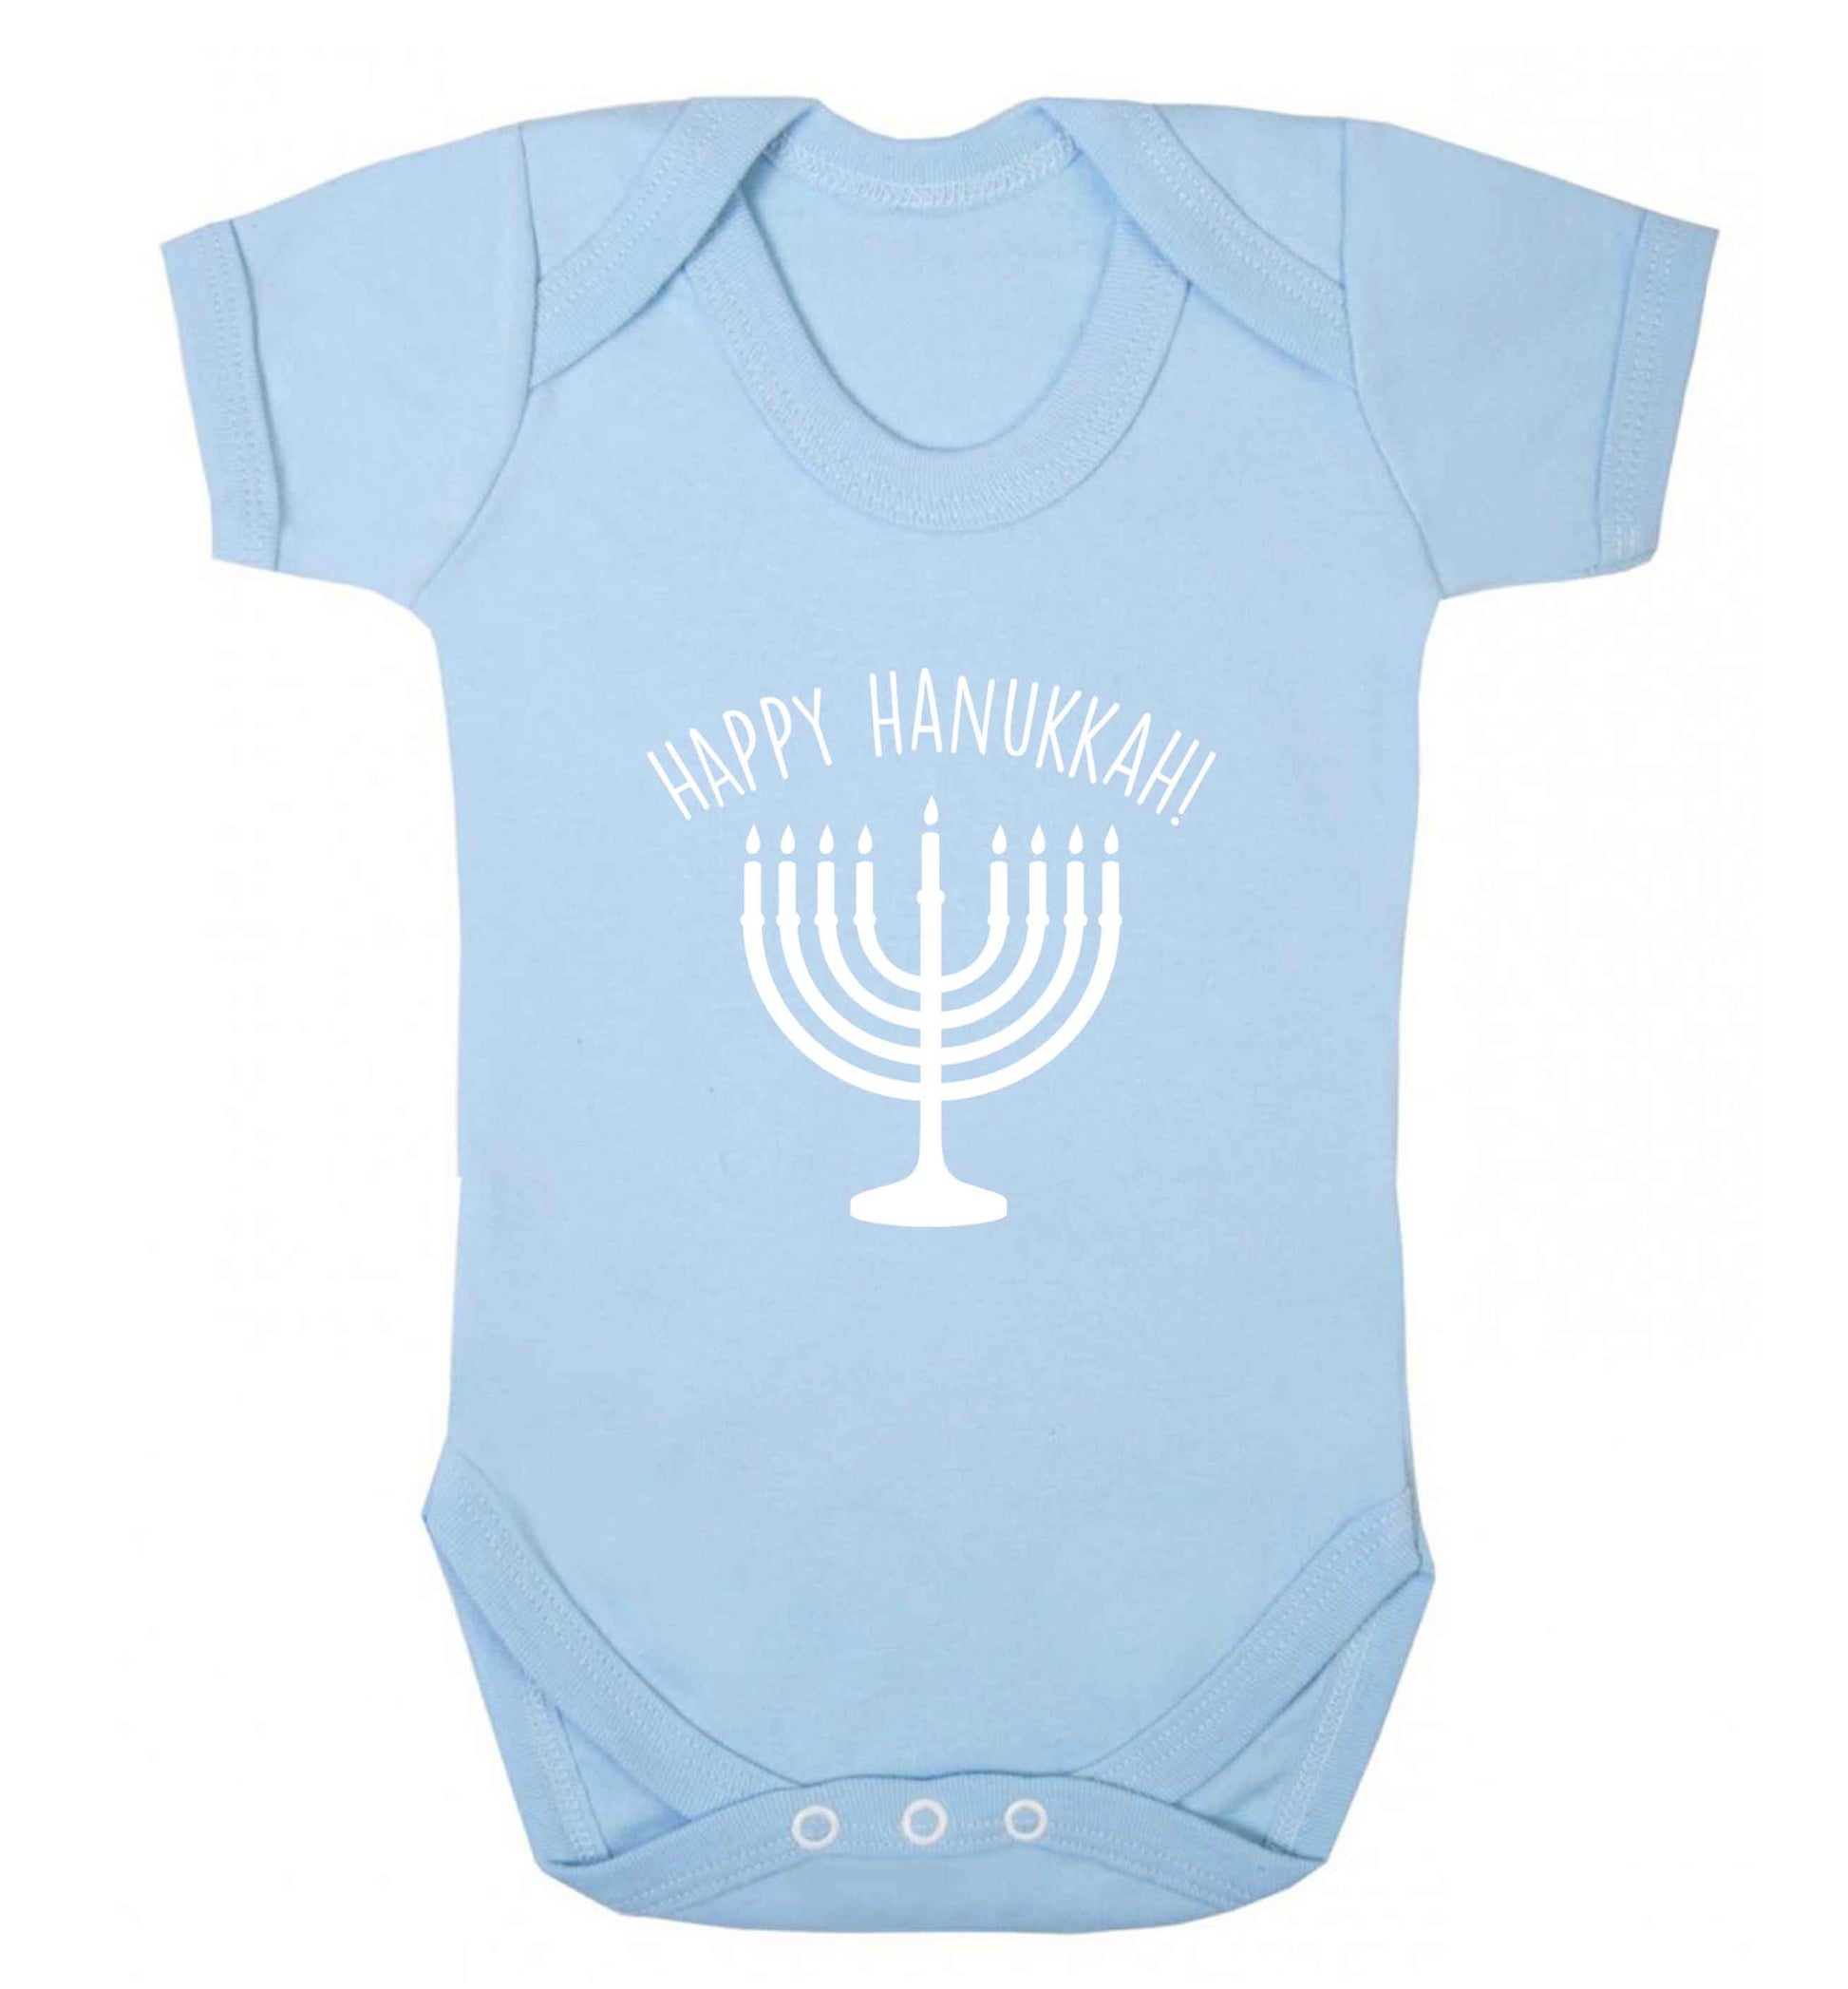 Happy hanukkah baby vest pale blue 18-24 months